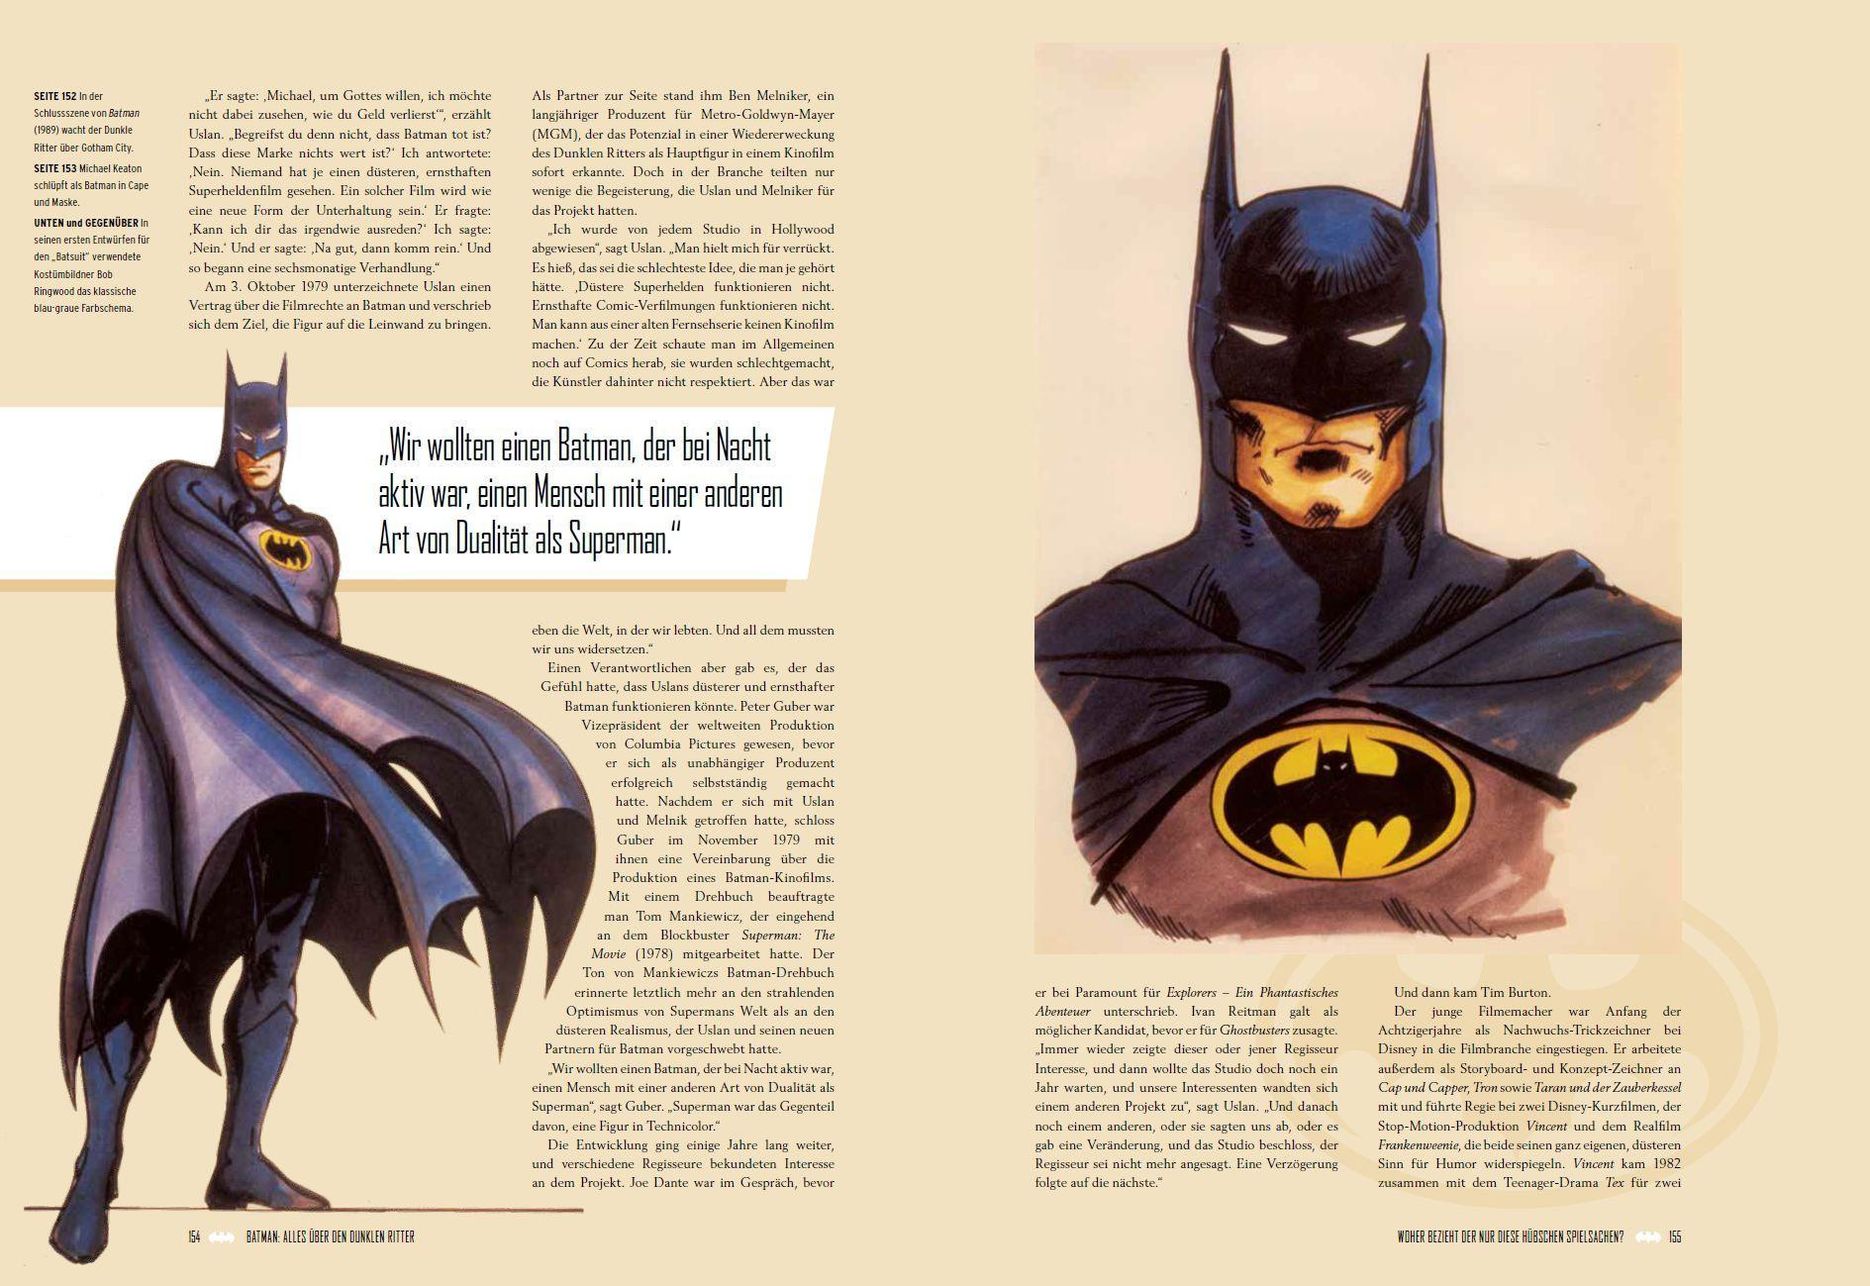 Batman: Definitive History of the Dark Knight Buch versandkostenfrei